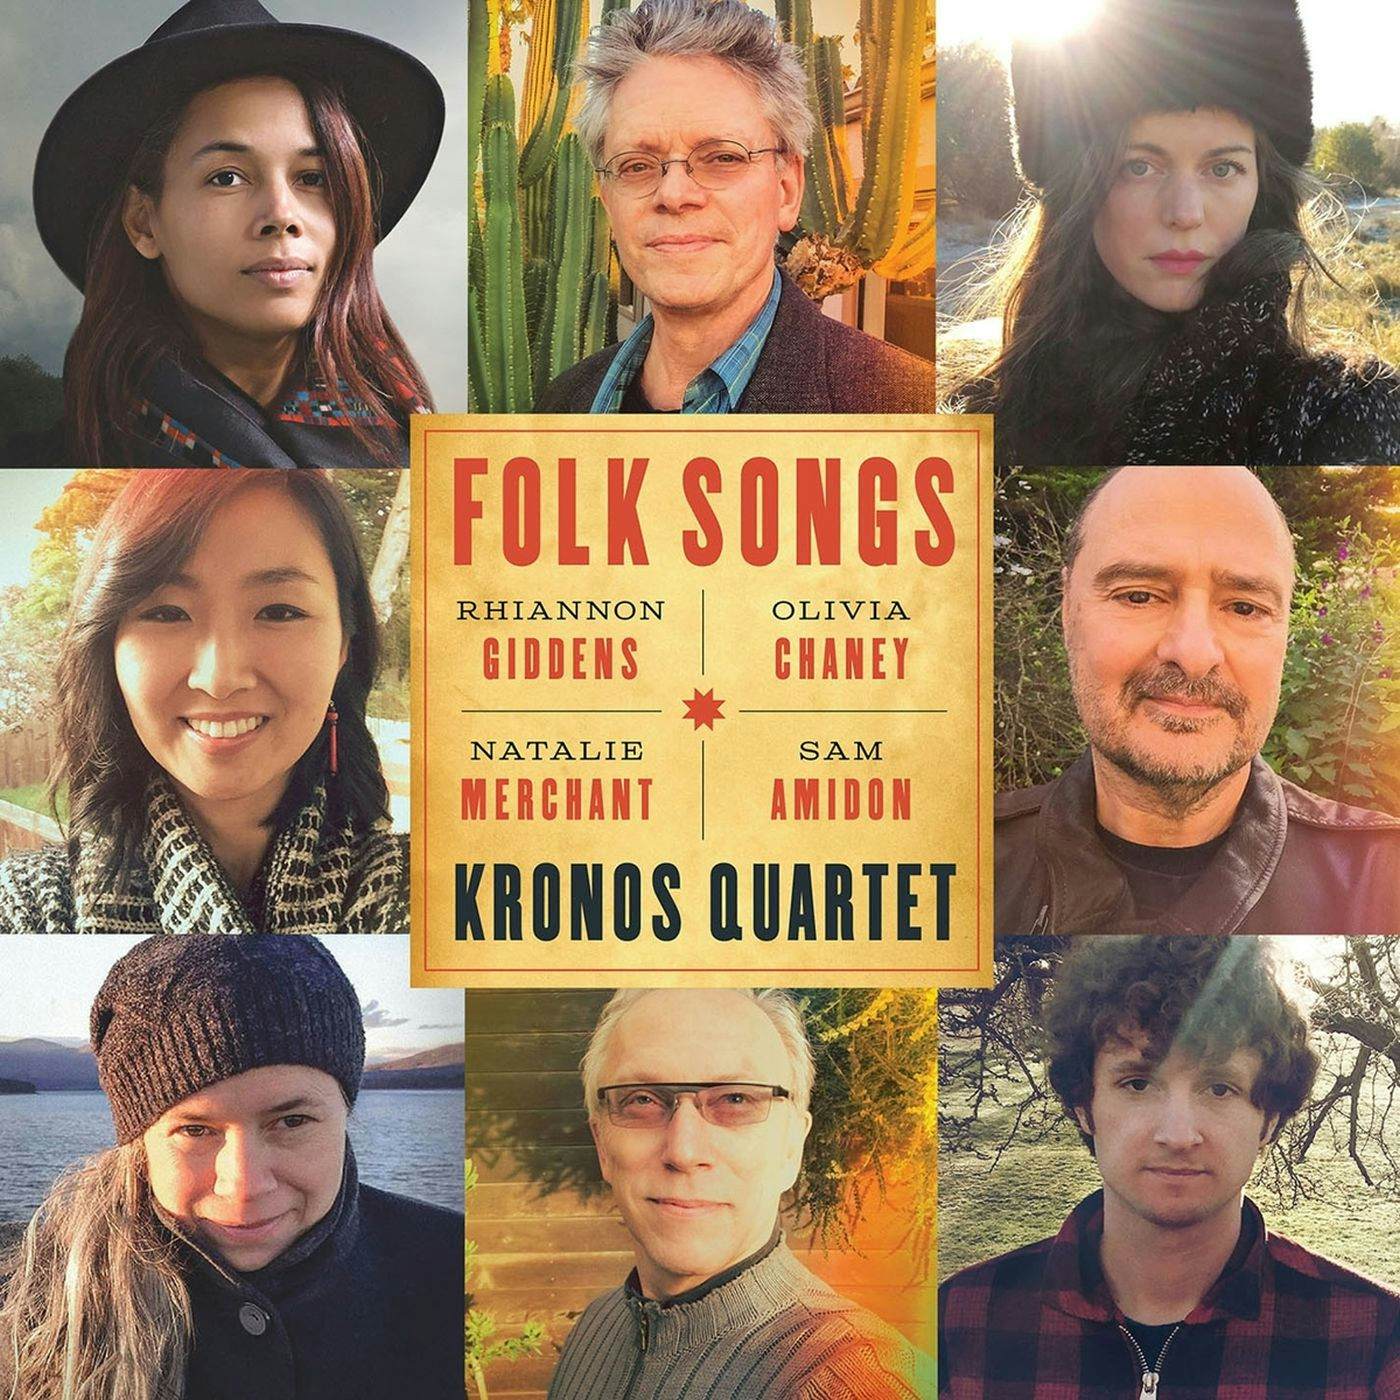 Kronos Quartet FOLK SONGS CD